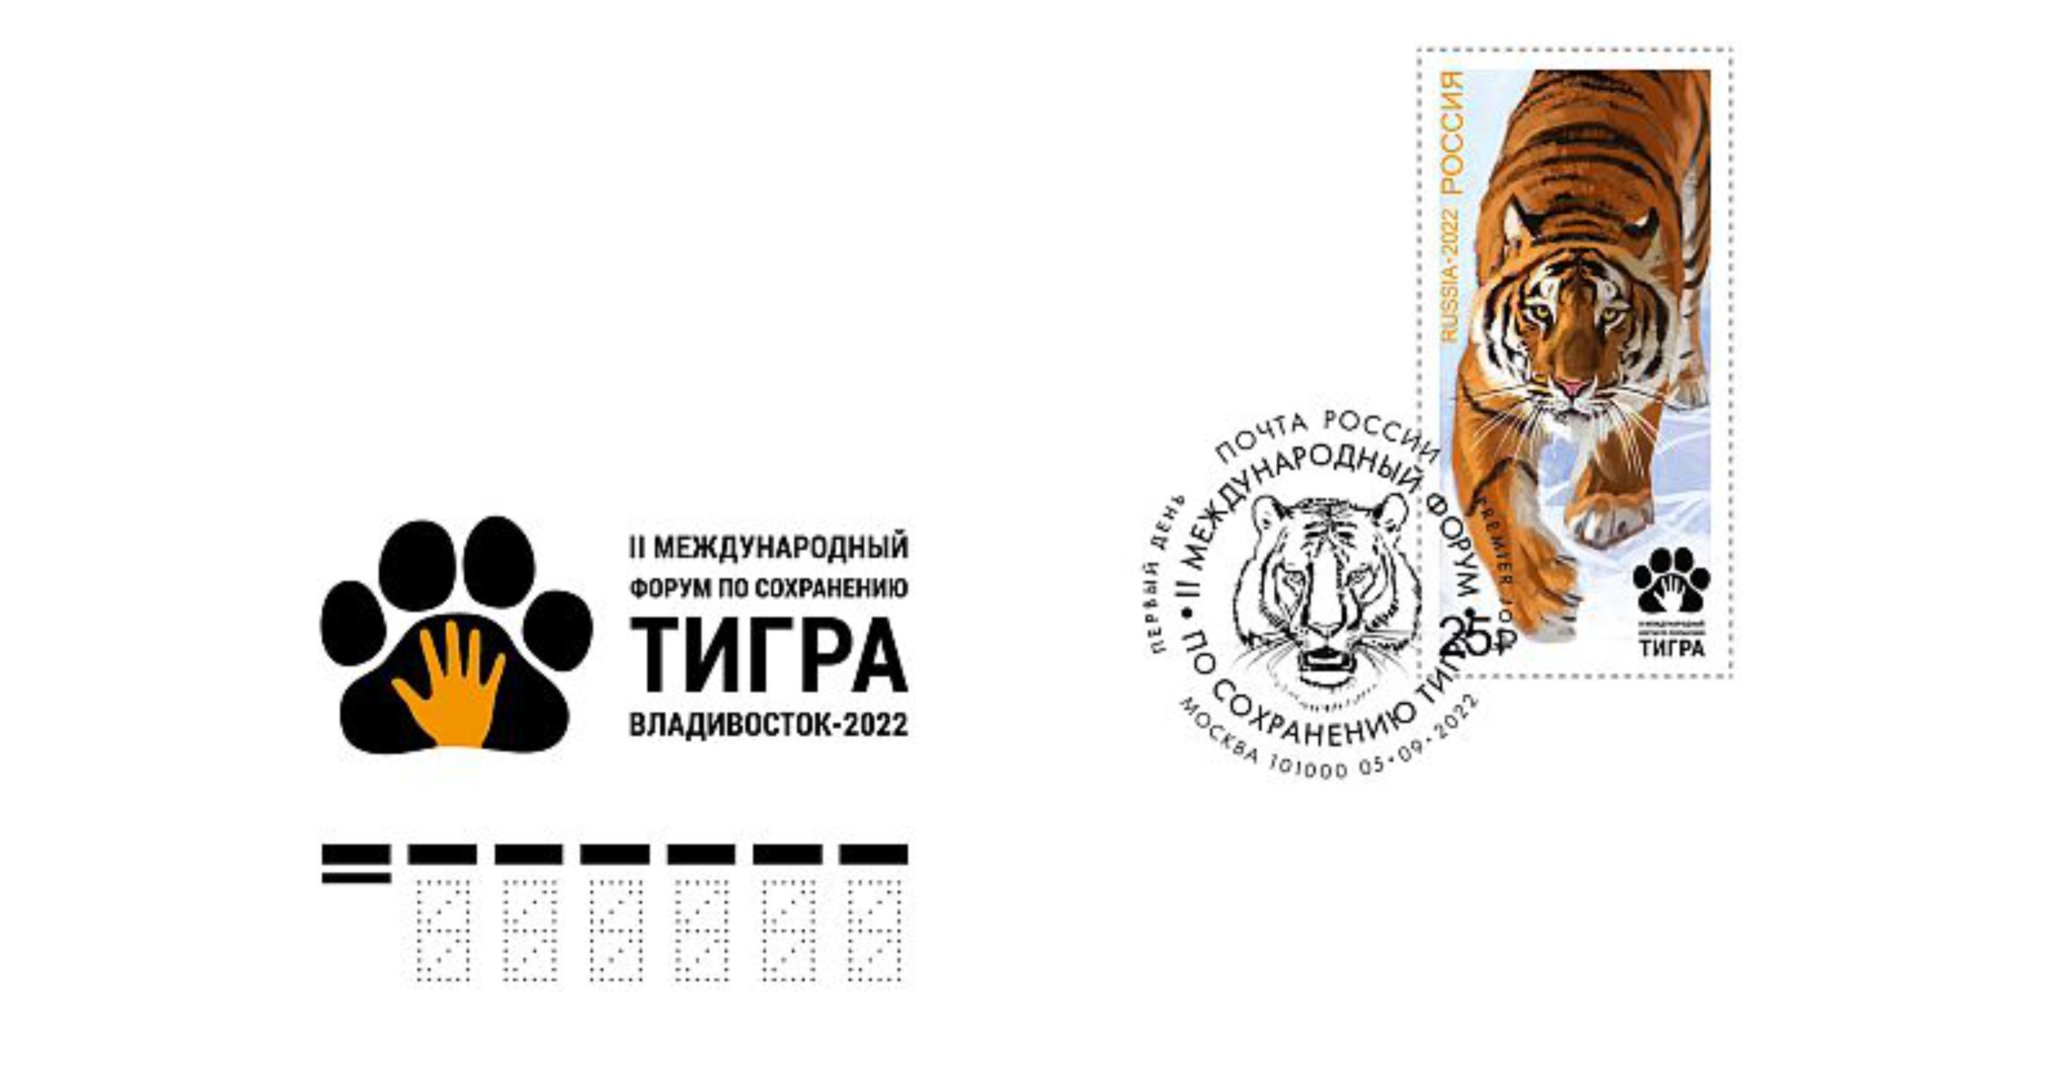 Сохранение тигров. Международный форум сохранения тигра. Международный форум по сохранению тигра марка. Марка с тигром. I Международный форум по сохранению тигра.